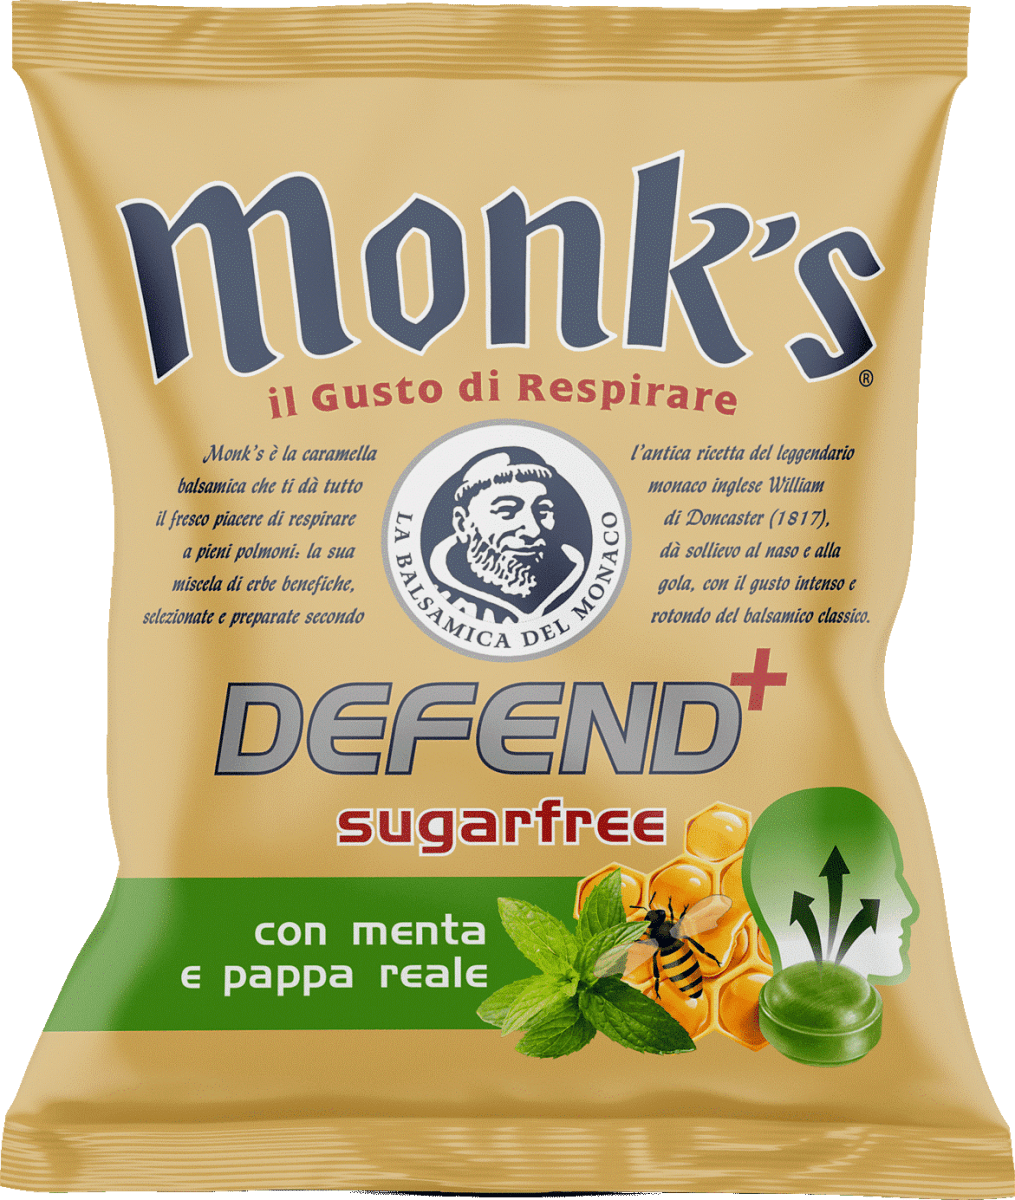 monk's DEFEND+ Caramelle Defend+ con menta e pappa reale, 46 g Acquisti  online sempre convenienti